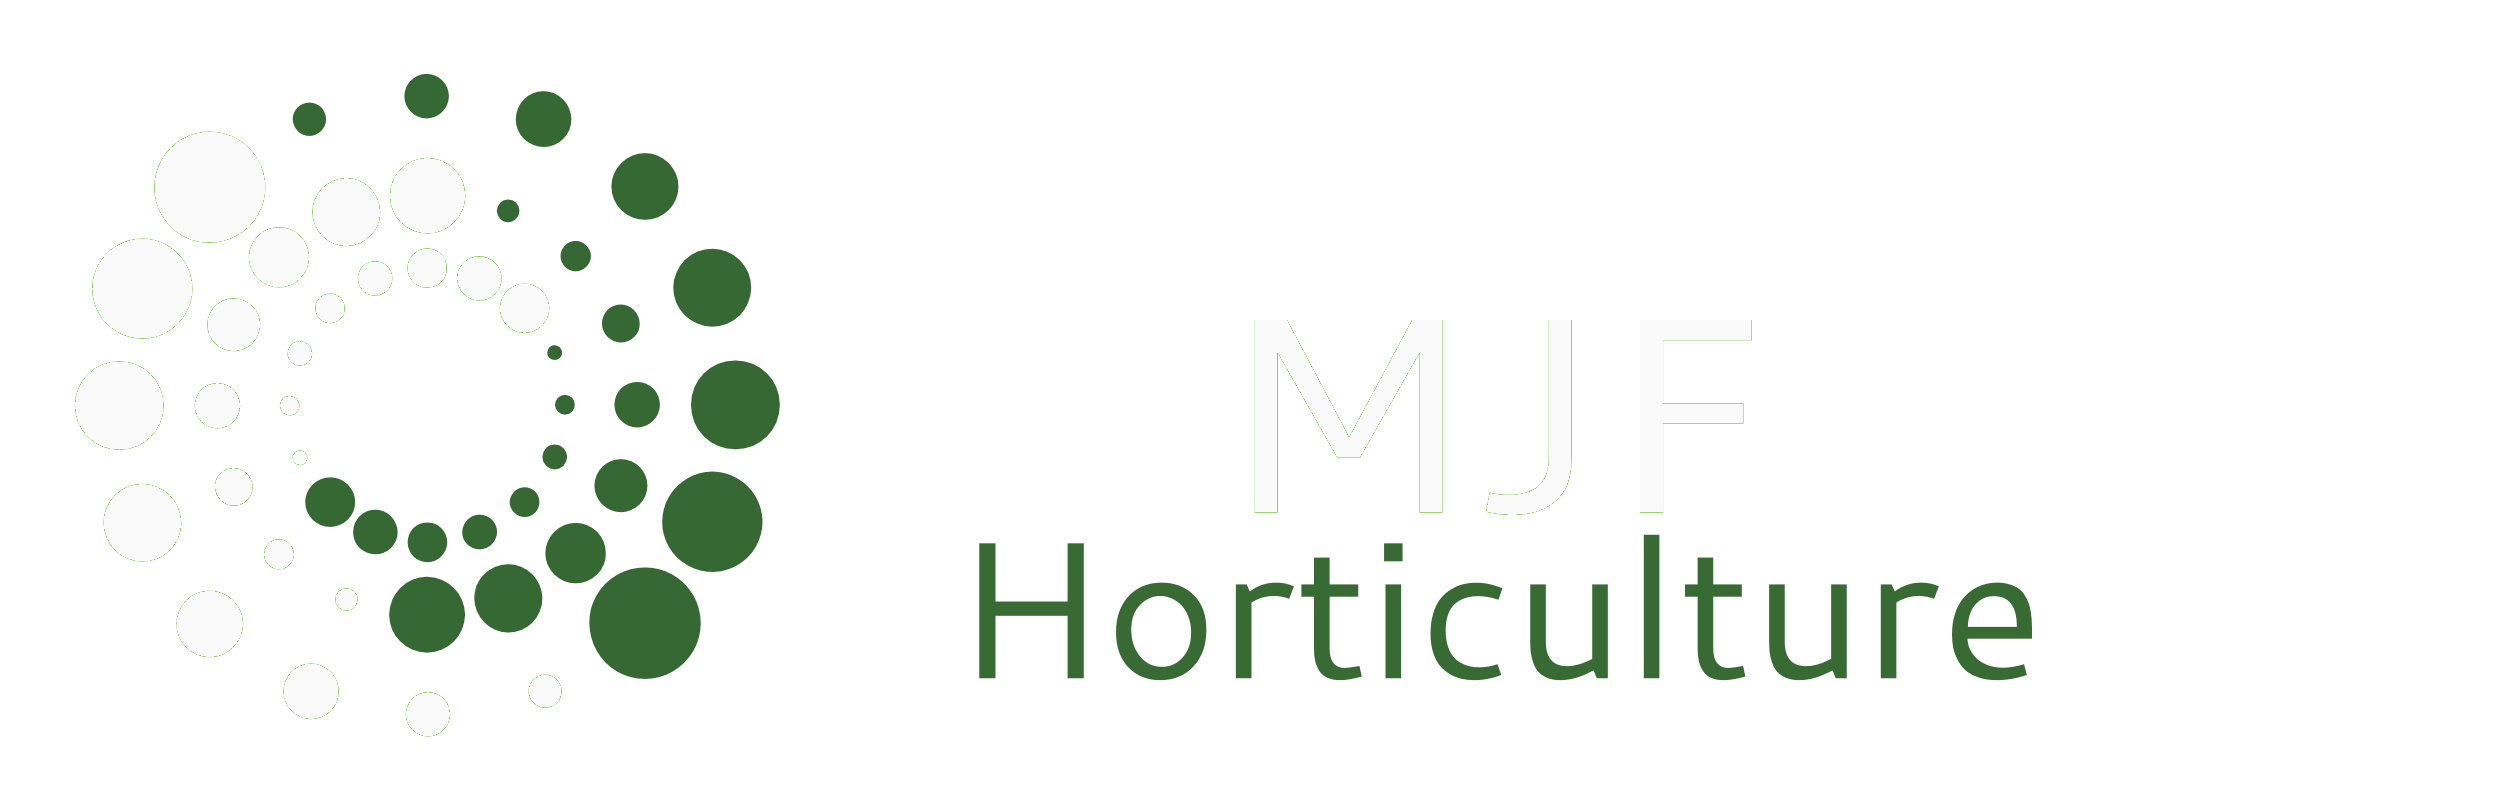 Horticulture Logo - MJF Horticulture